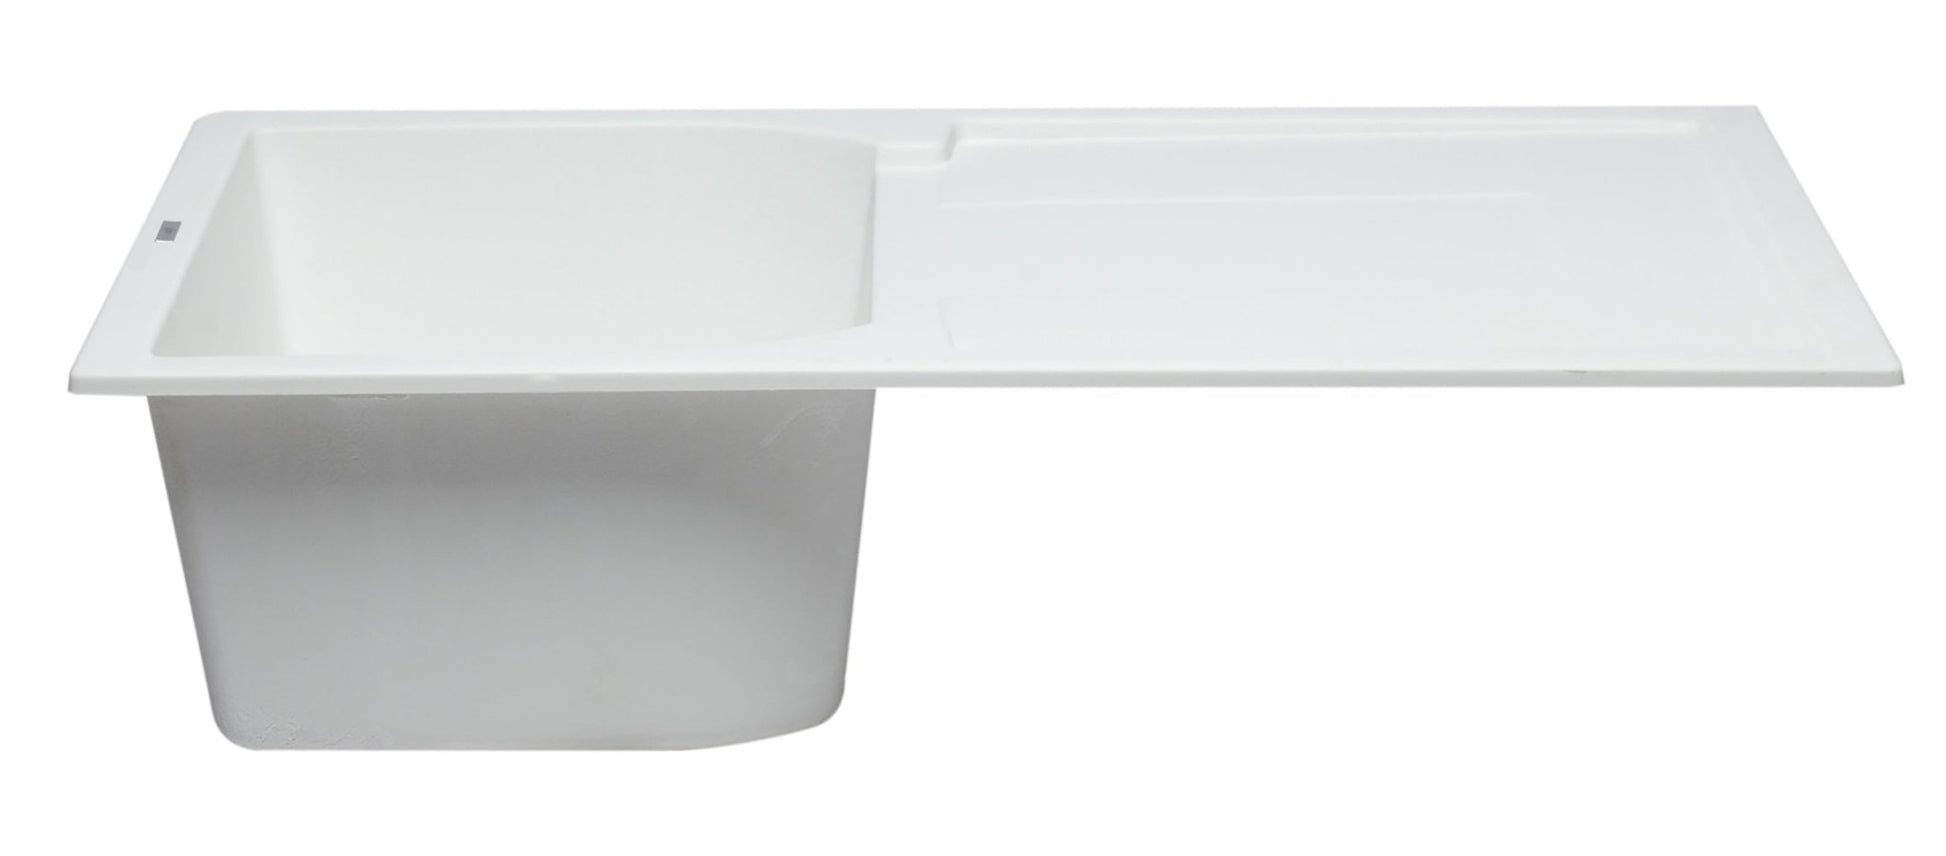 Alfi brand AB1620DI 34" Single Bowl Granite Composite Kitchen Sink with Drainboard